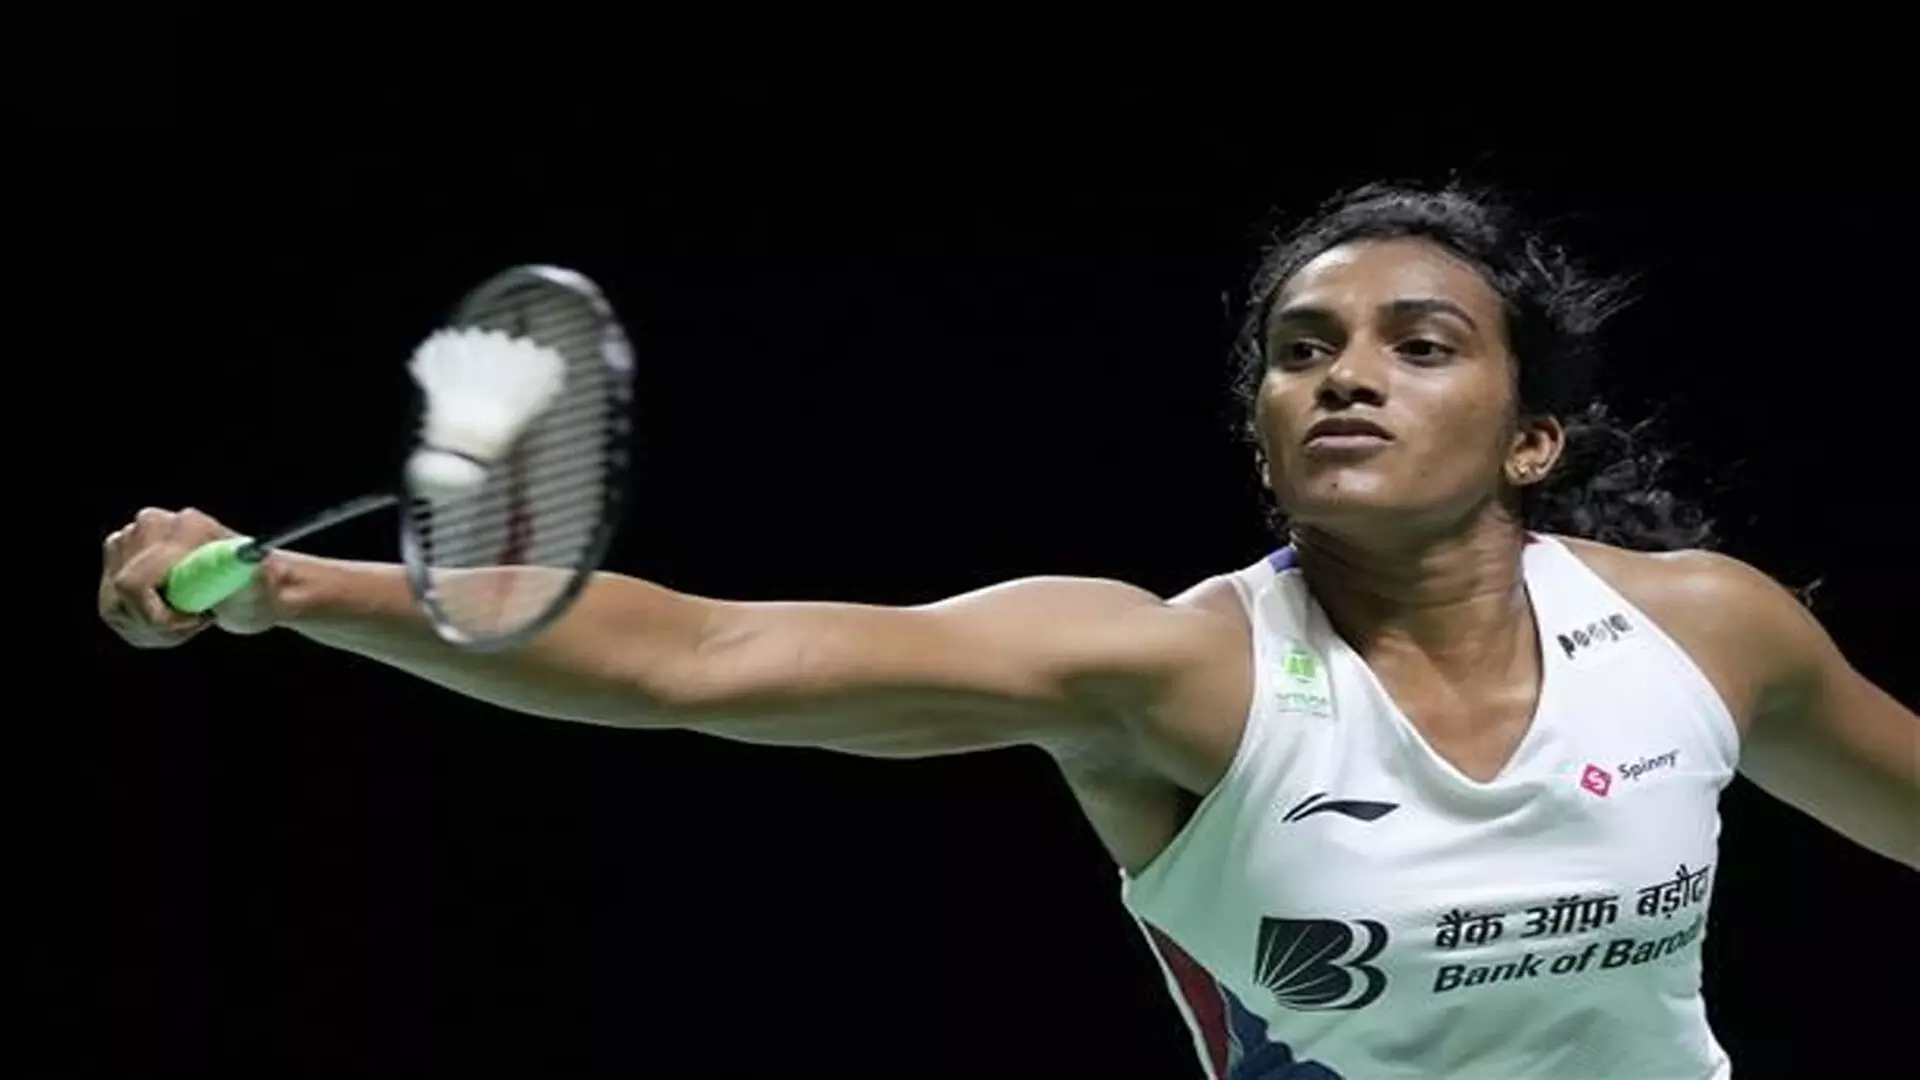 बैडमिंटन एशिया चैंपियनशिप: पीवी सिंधु जीतीं; लक्ष्य सेन, श्रीकांत शुरुआती दौर में हारे